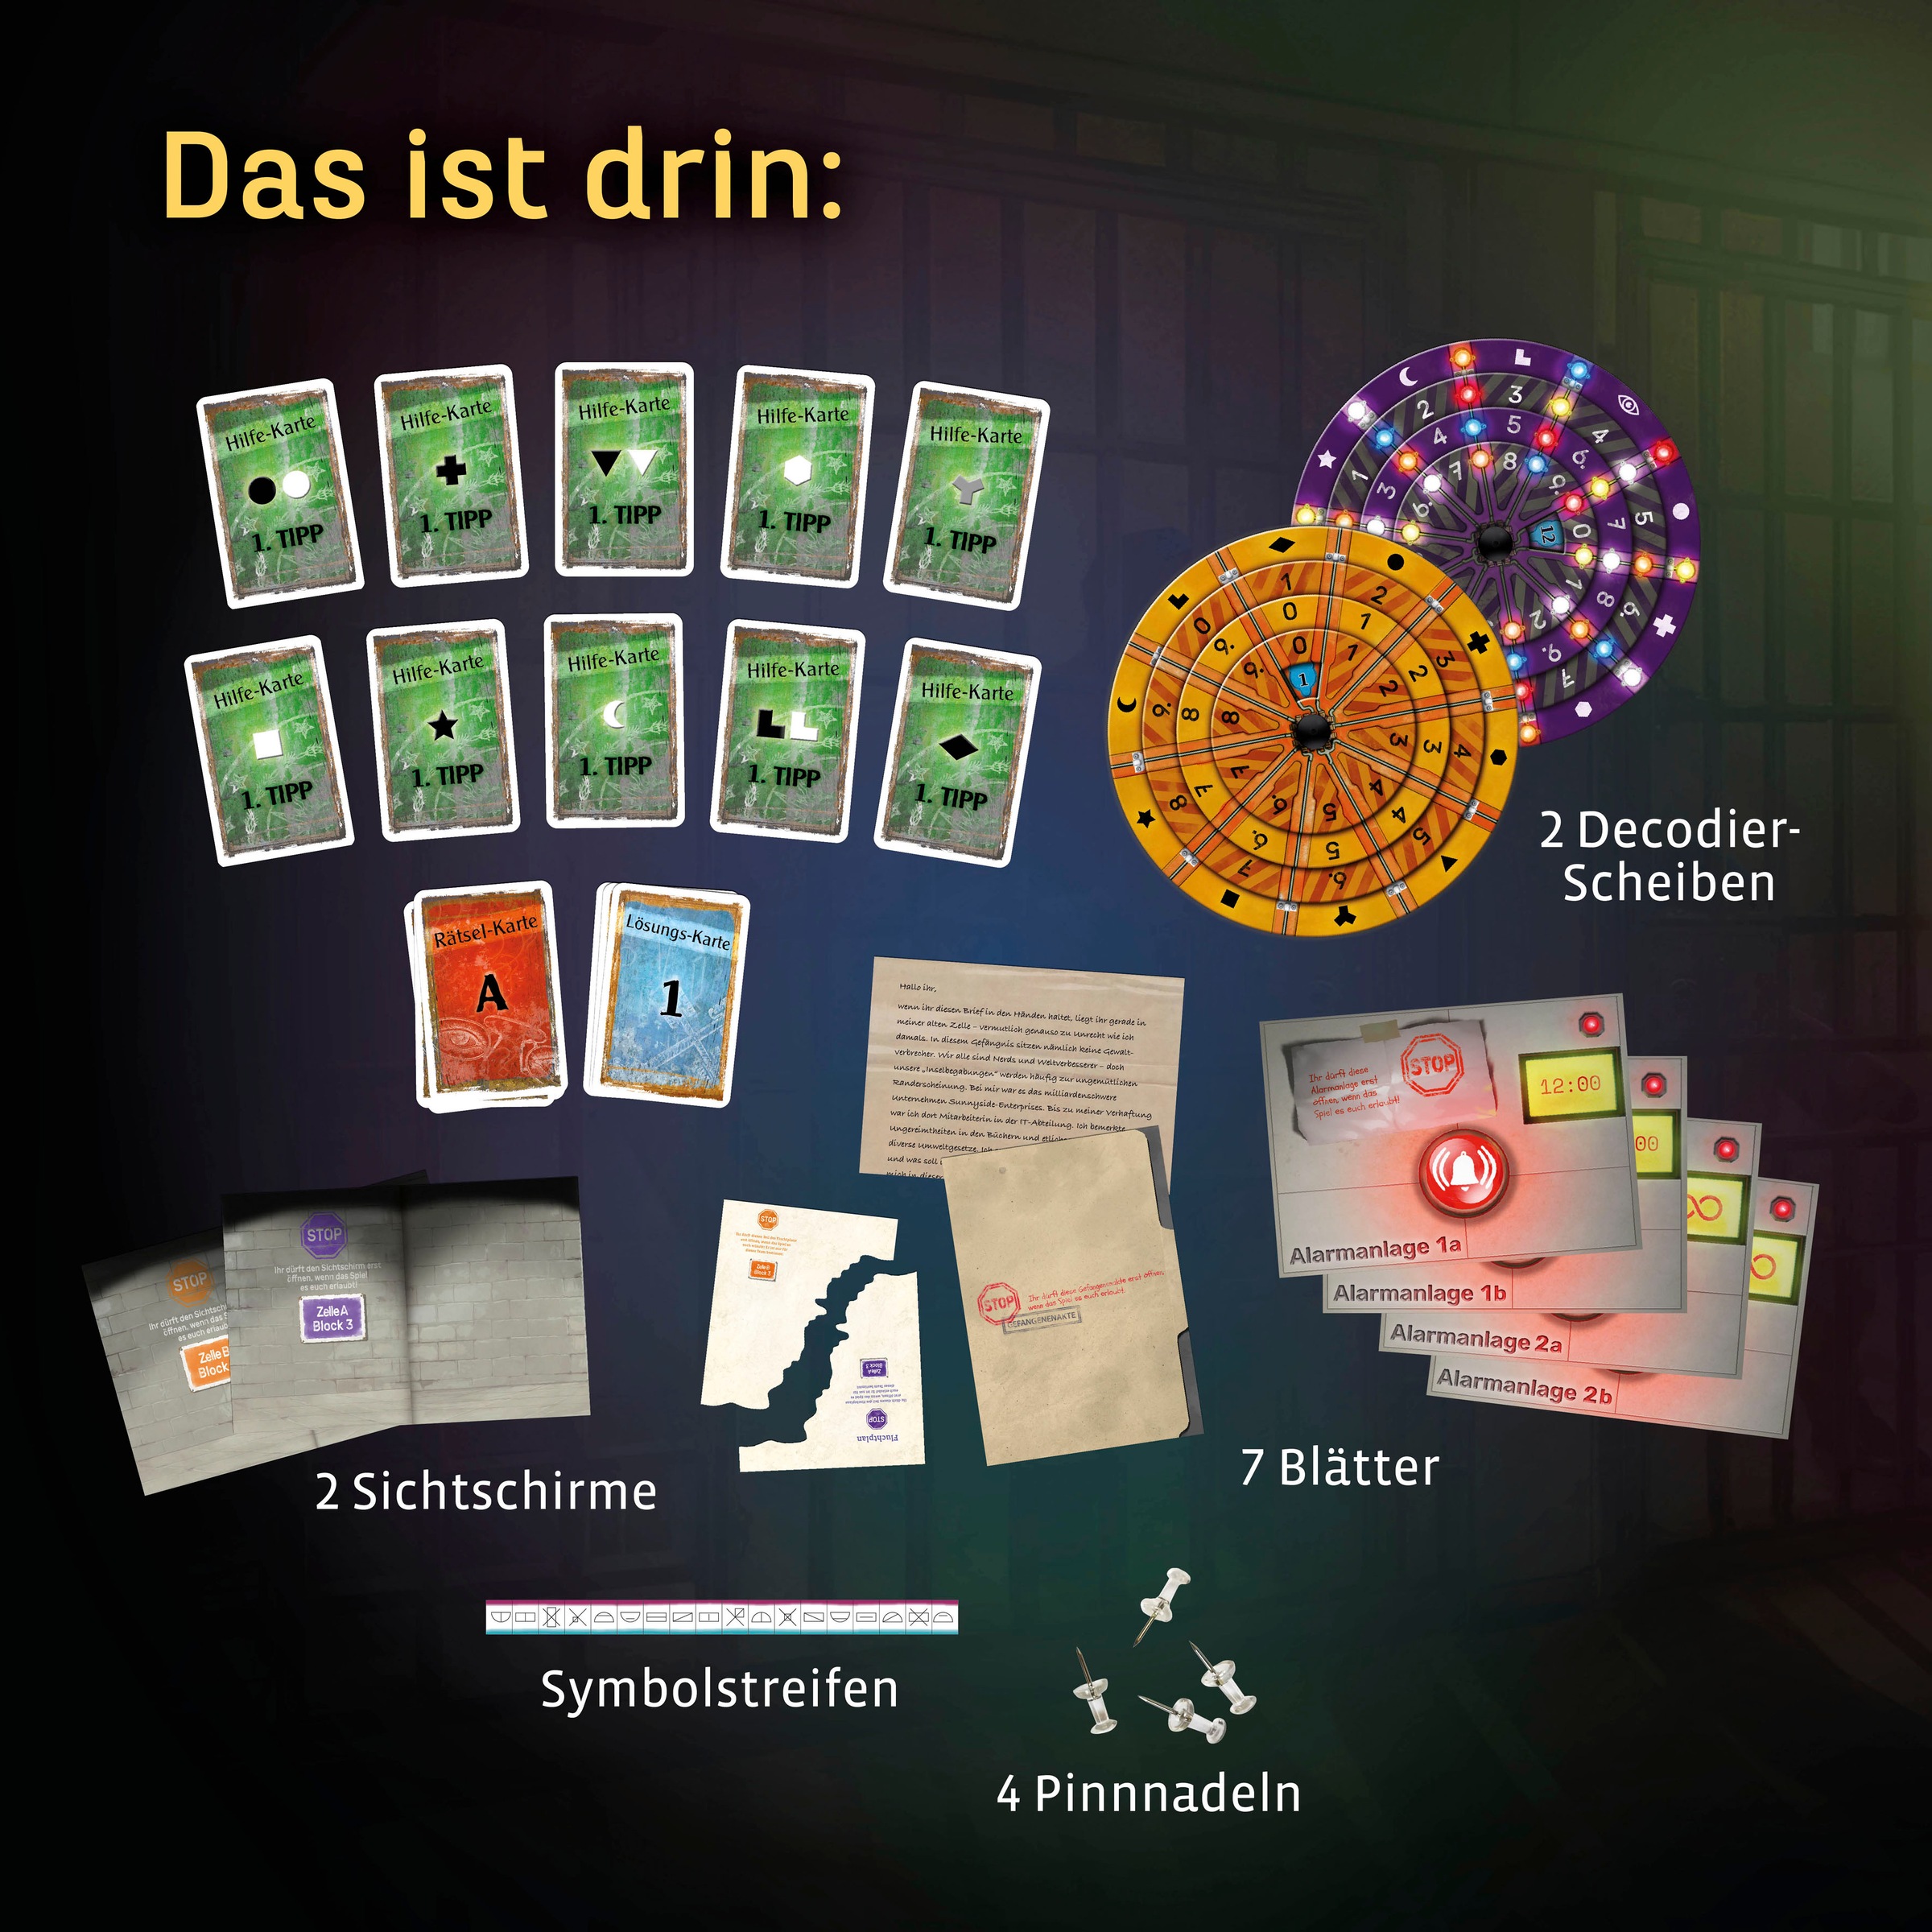 Kosmos Spiel »EXIT, Das Spiel, Der Gefängnisausbruch«, Made in Germany